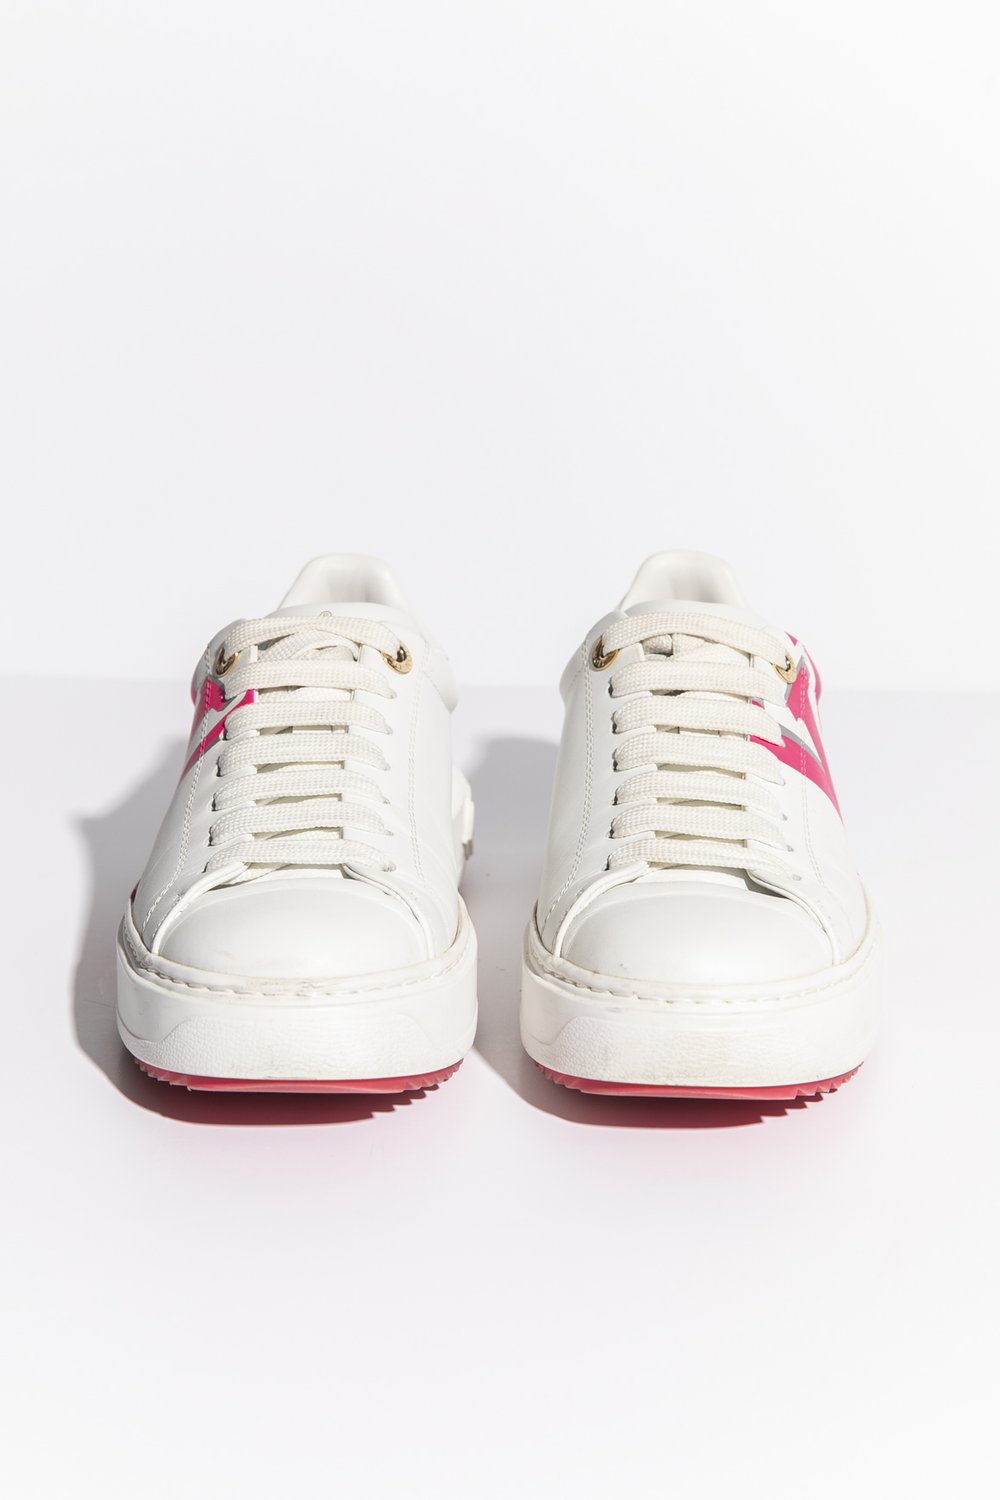 Louis Vuitton LV Squad Monogram Pink White Sneaker – Cheap